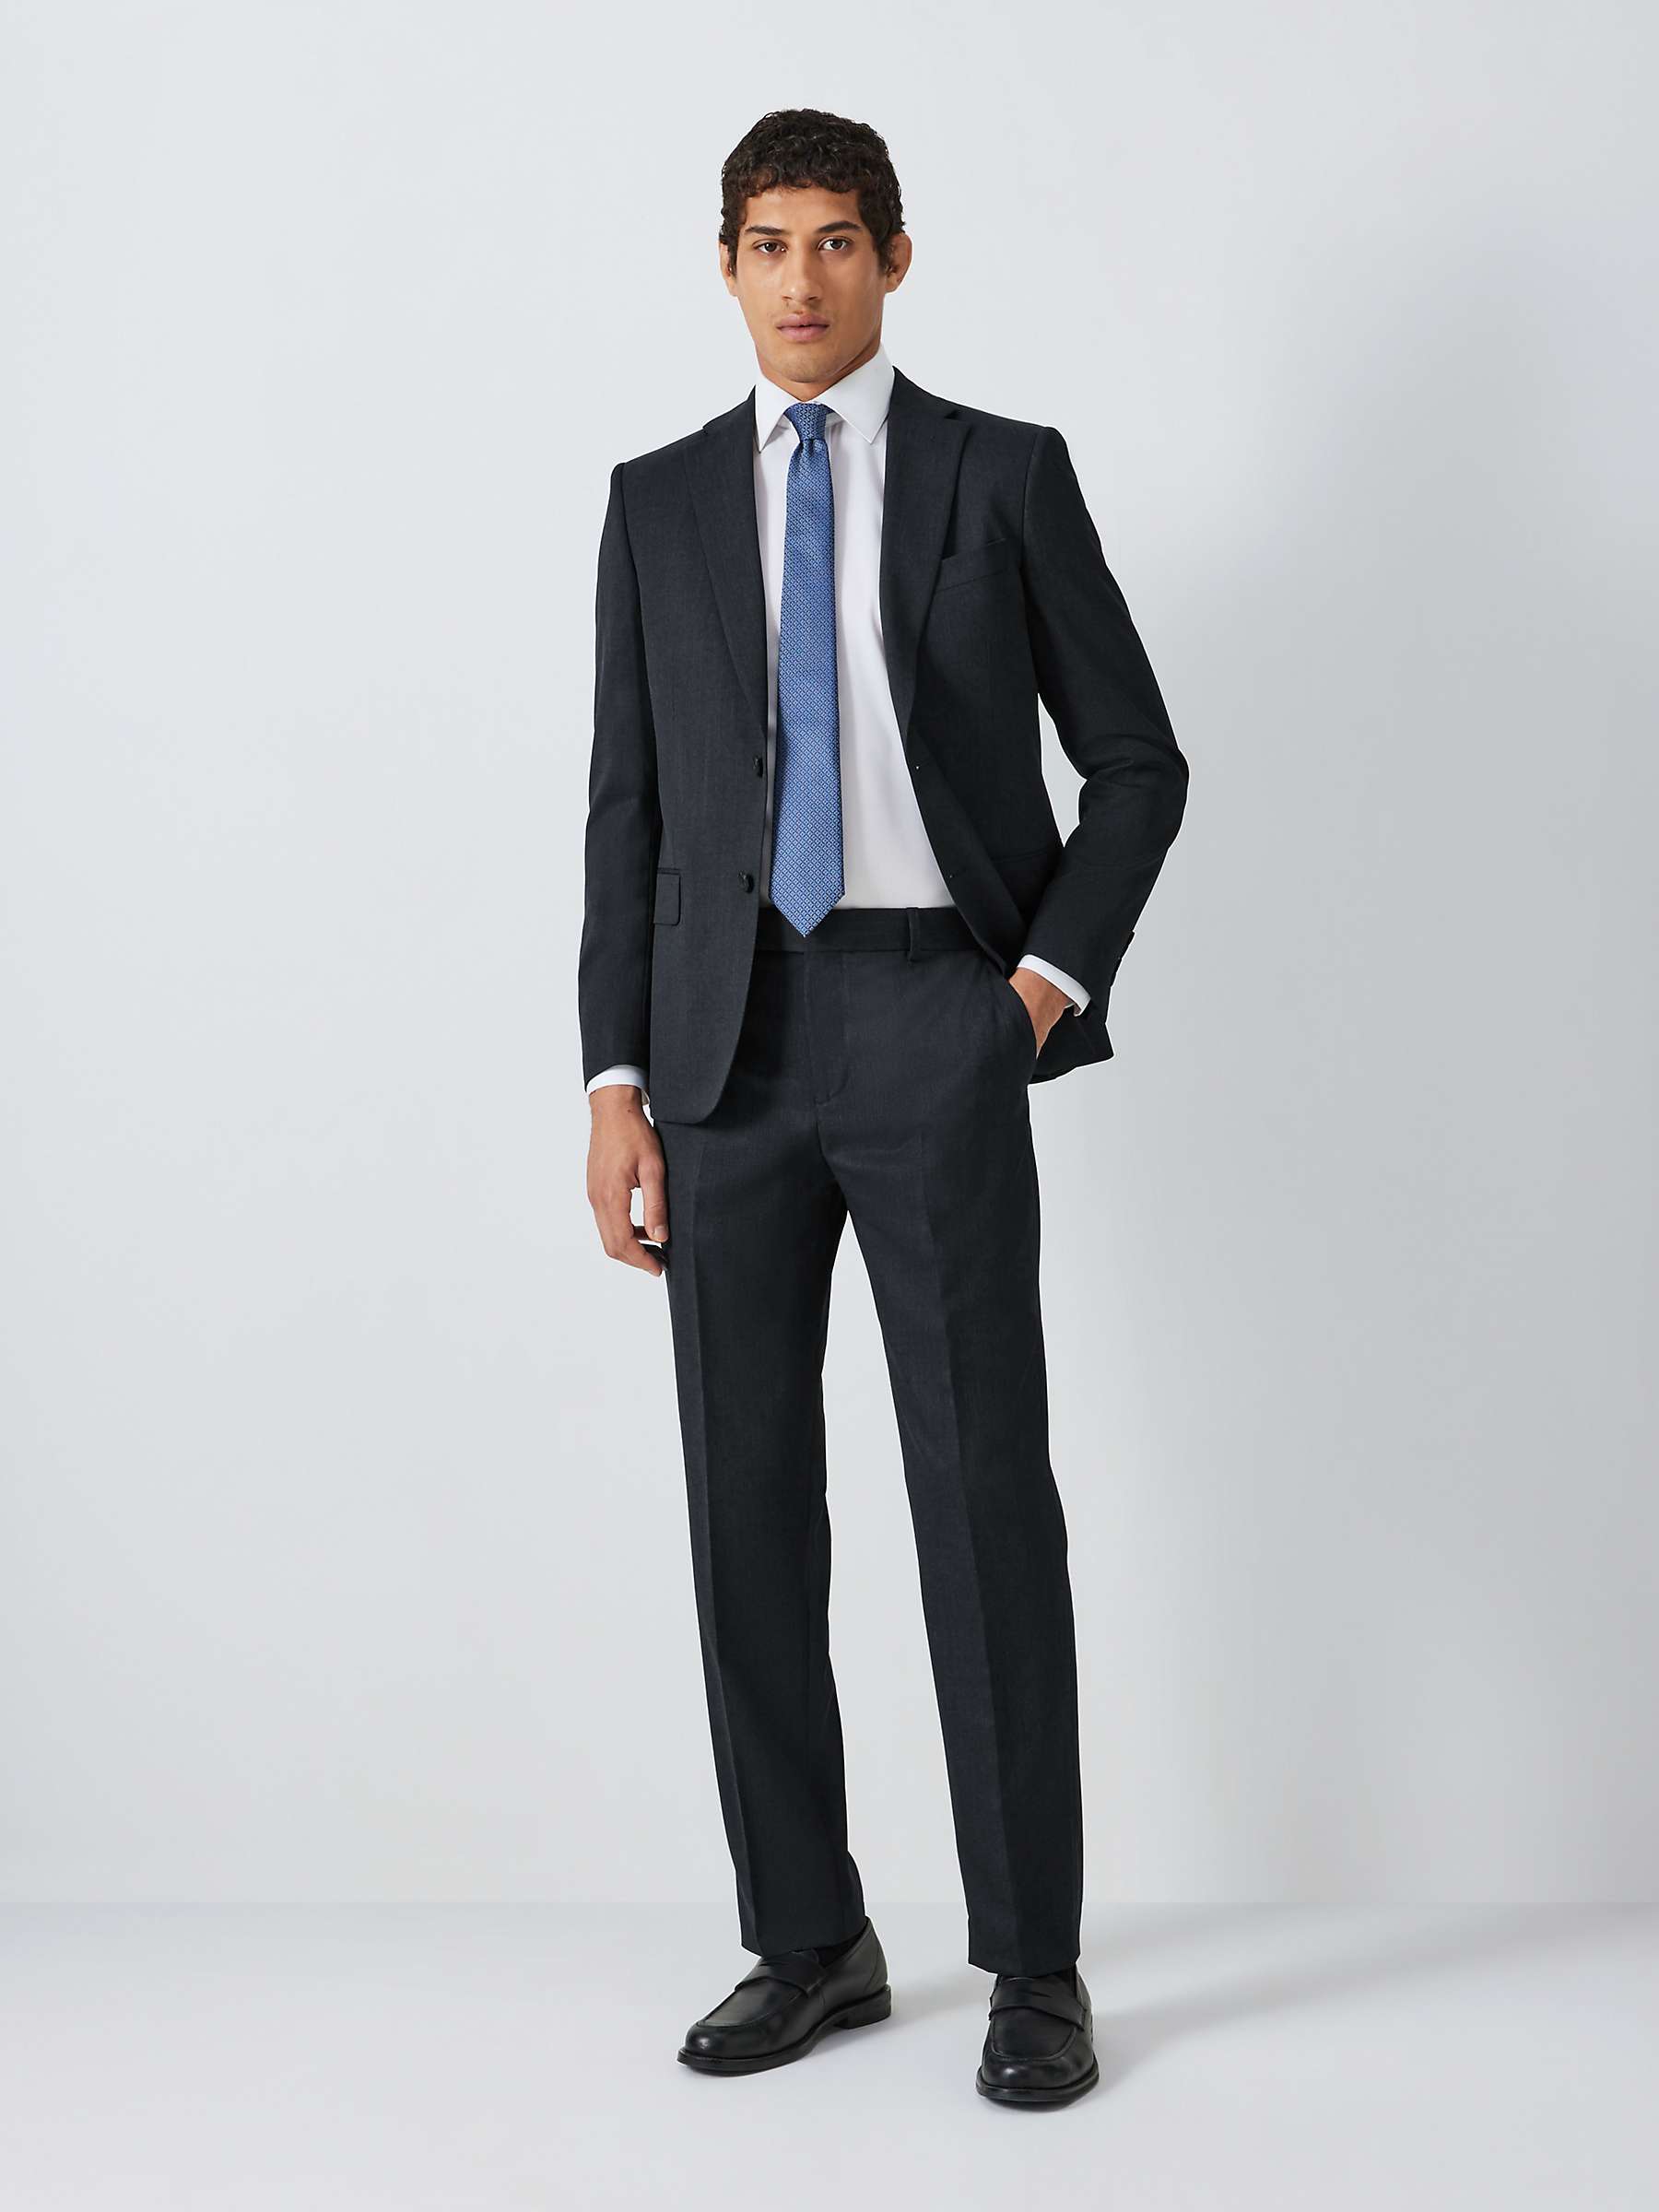 Buy John Lewis Washable Regular Fit Suit Jacket Online at johnlewis.com